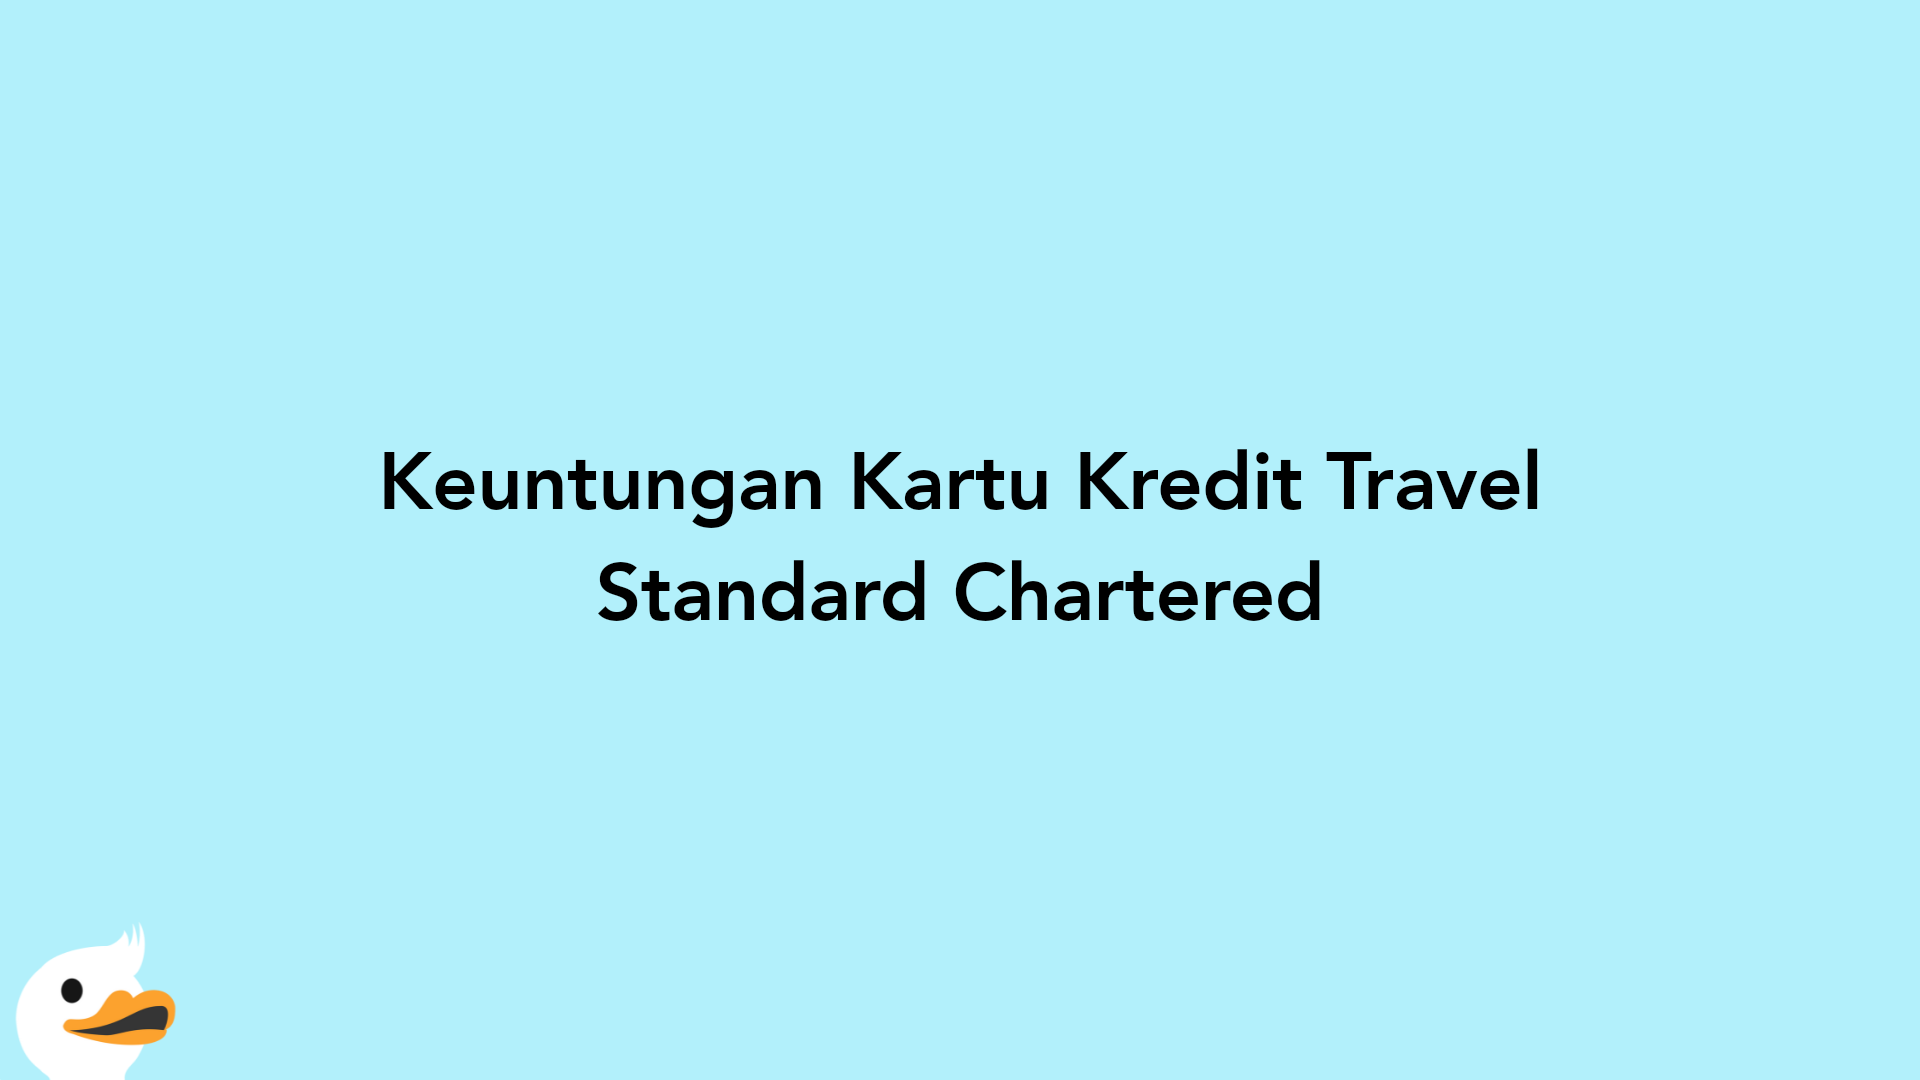 Keuntungan Kartu Kredit Travel Standard Chartered